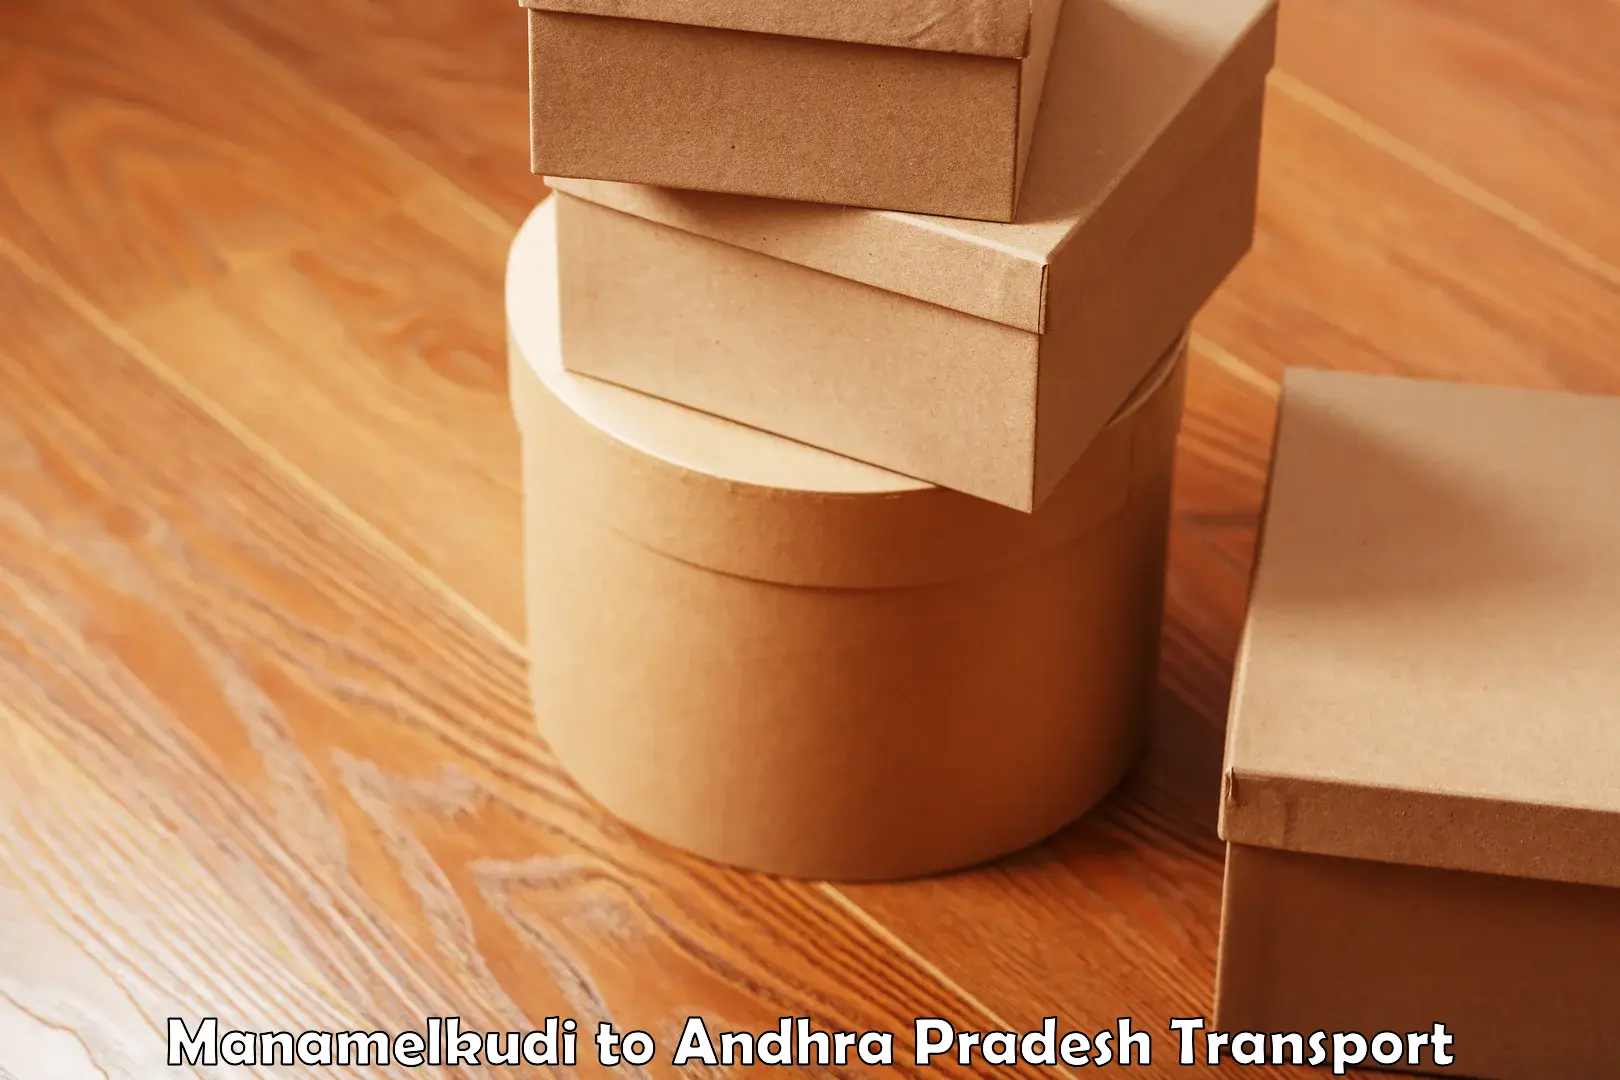 Delivery service Manamelkudi to Andhra Pradesh